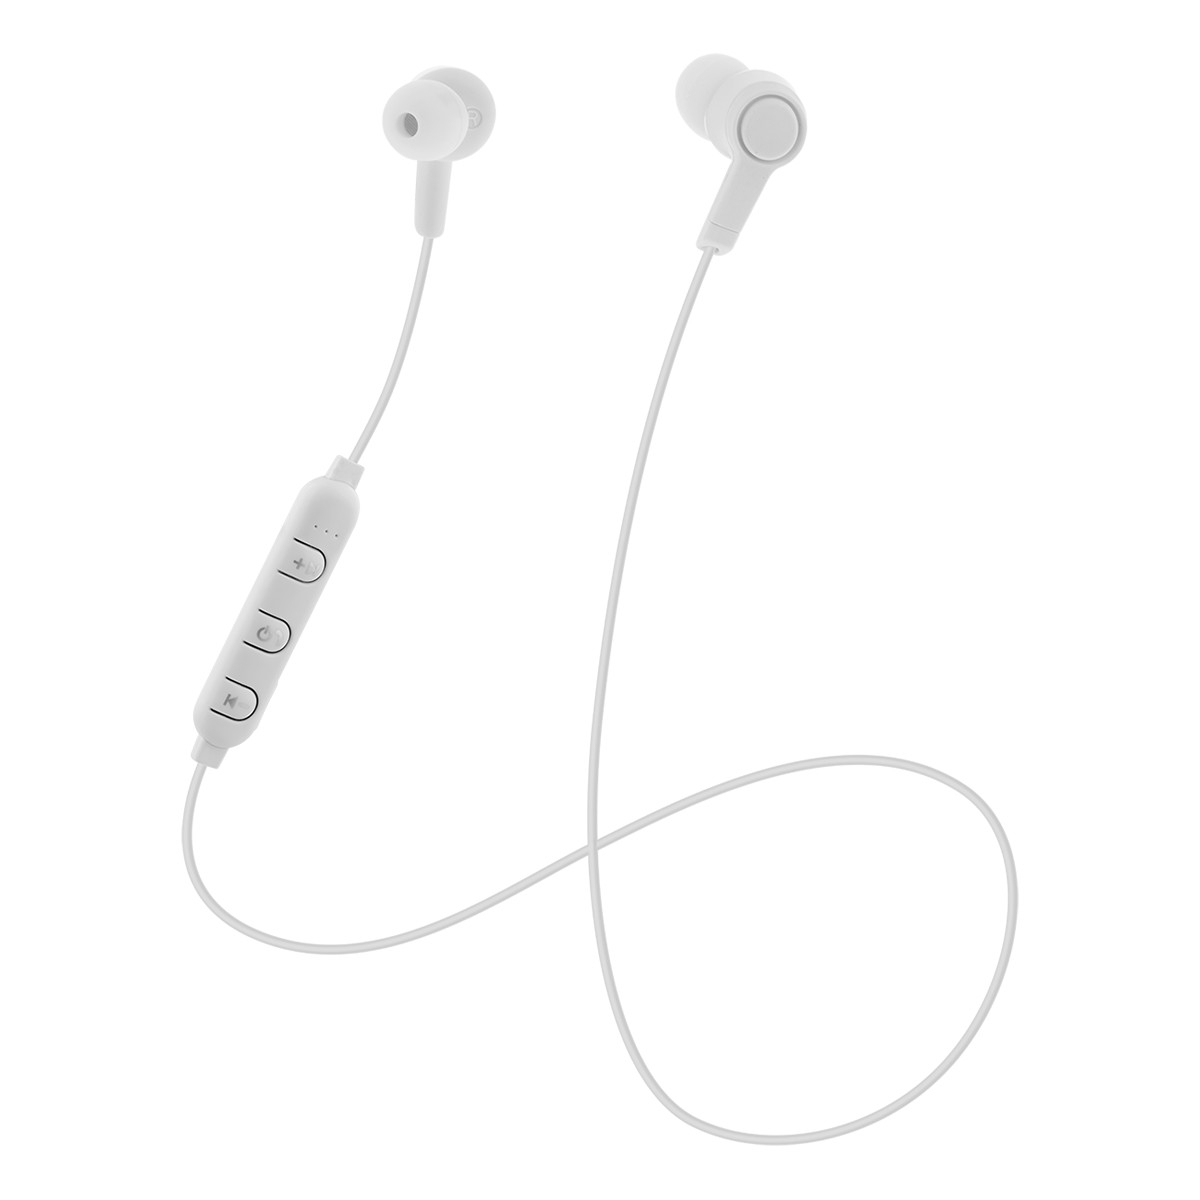 STREETZ Trådlösa In Ear-hörlurar med mikrofon, vit